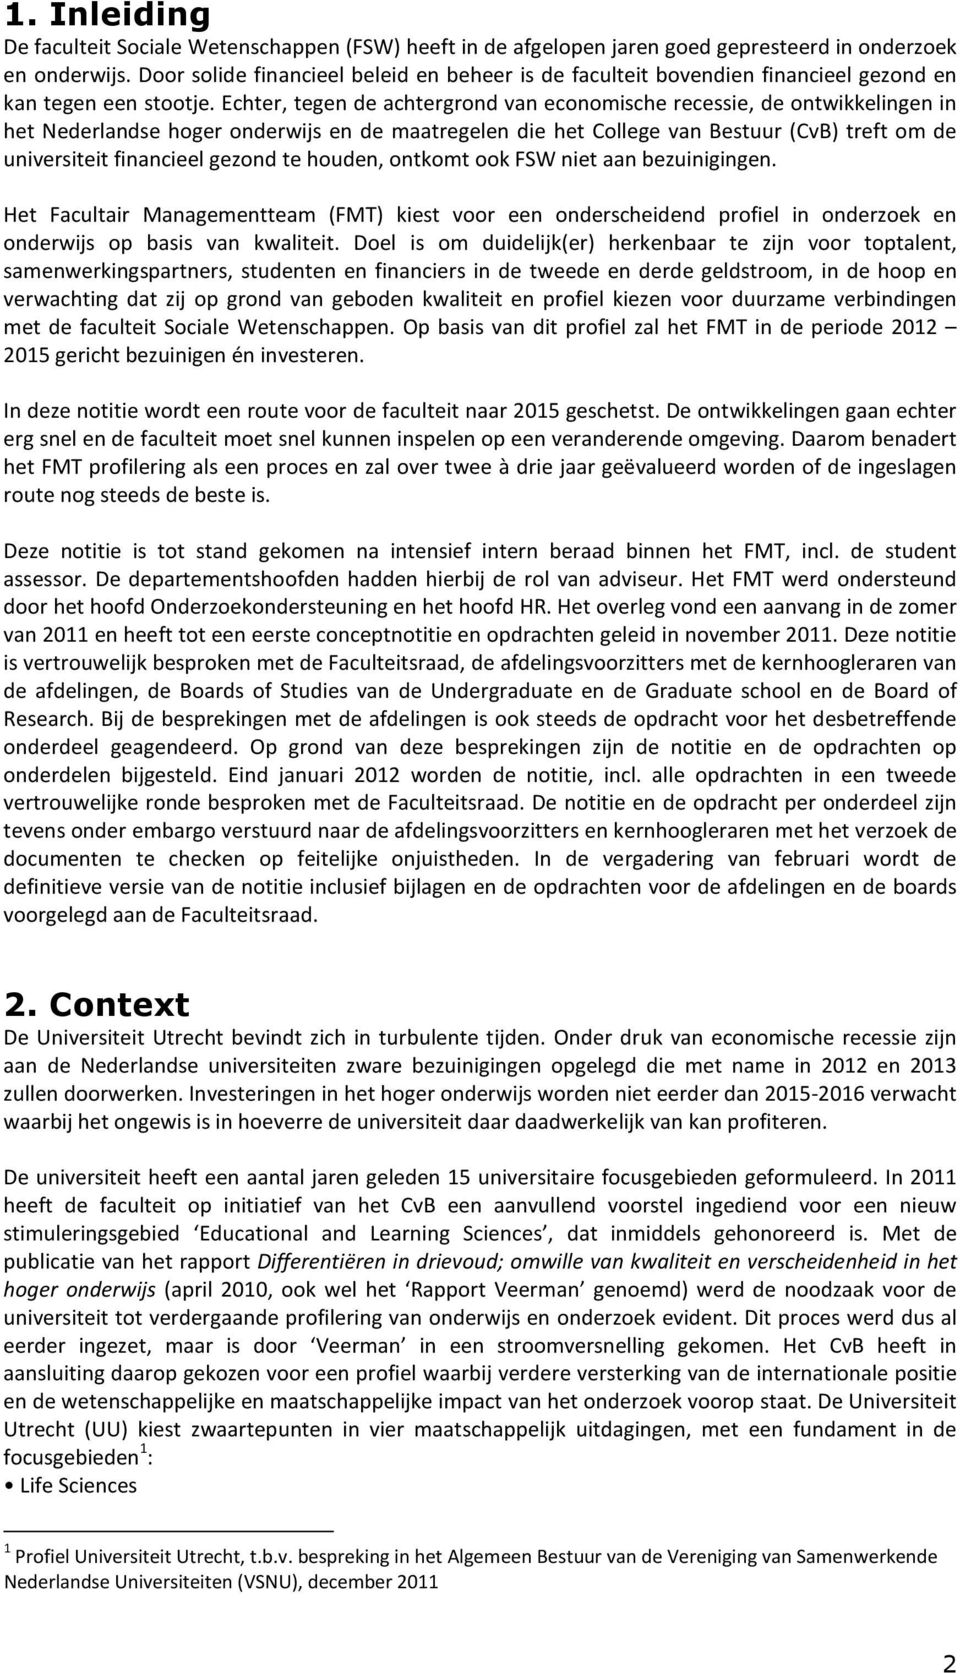 Echter, tegen de achtergrond van economische recessie, de ontwikkelingen in het Nederlandse hoger onderwijs en de maatregelen die het College van Bestuur (CvB) treft om de universiteit financieel